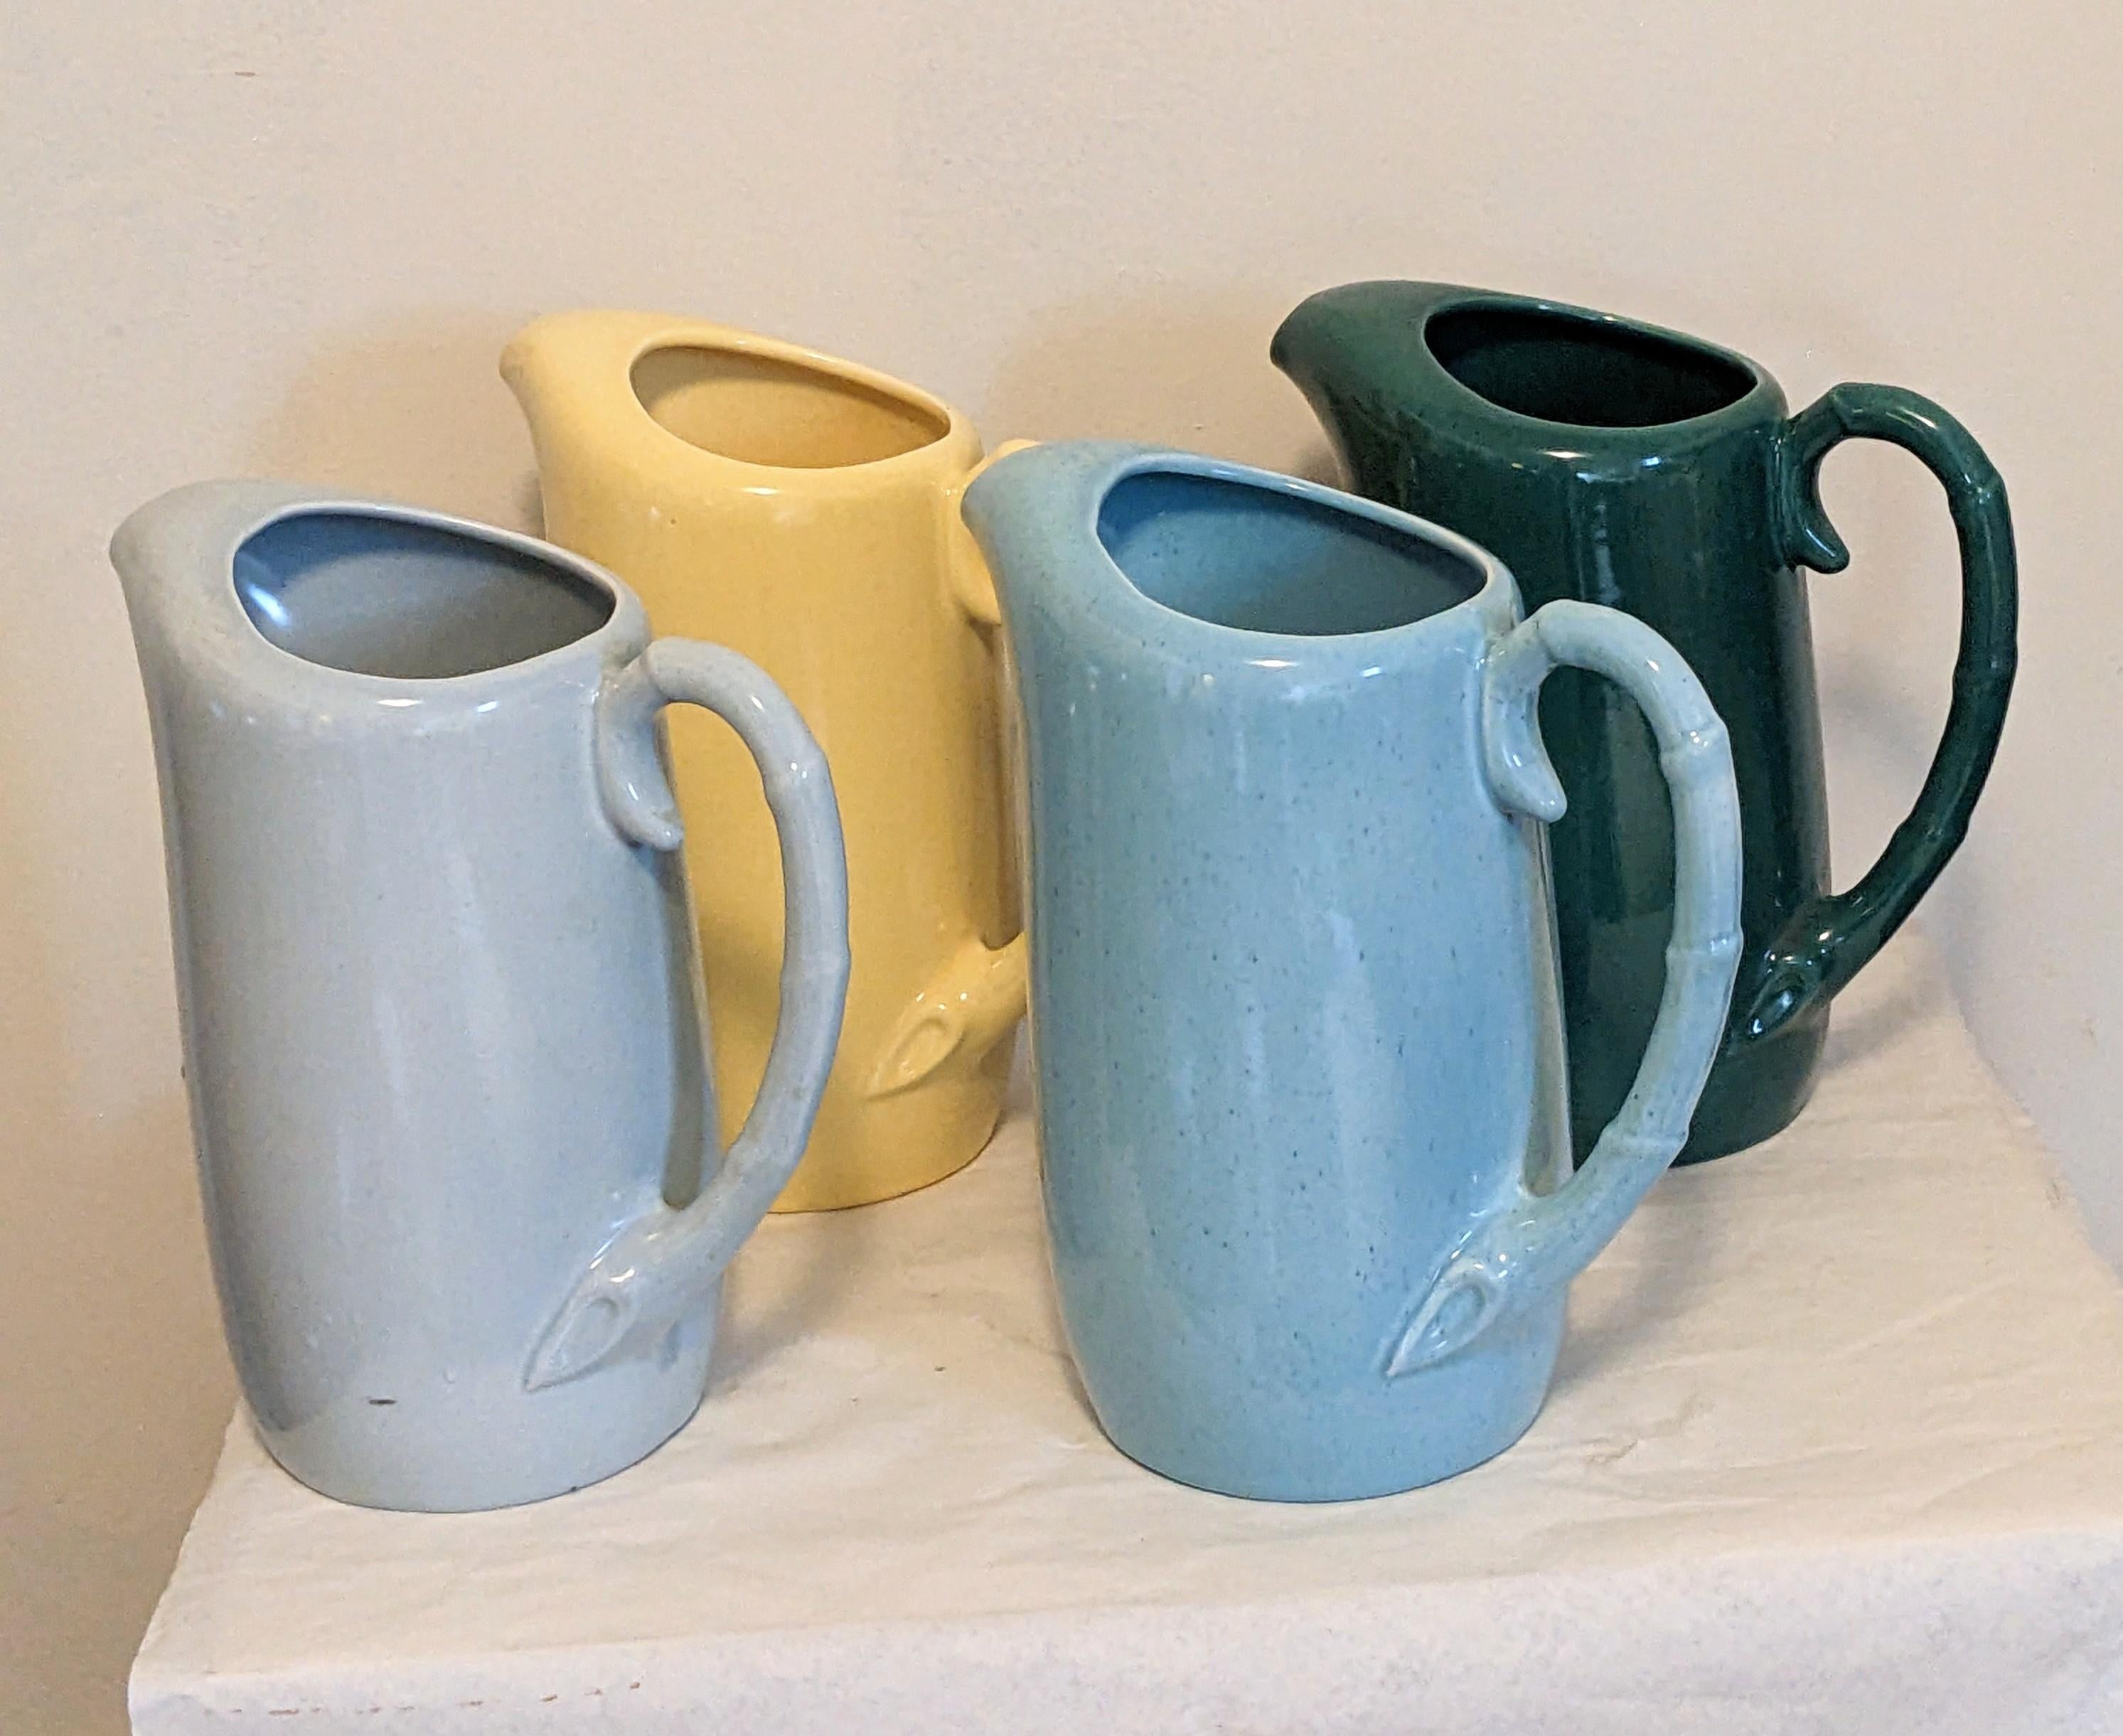 Ensemble de 4 pichets en poterie Art Déco attribués à Bauer Pottery, parfaits pour une touche de couleur instantanée dans votre décor. De superbes pièces d'exposition, chacune avec une poignée en bambou incurvée. 
Corps 10 